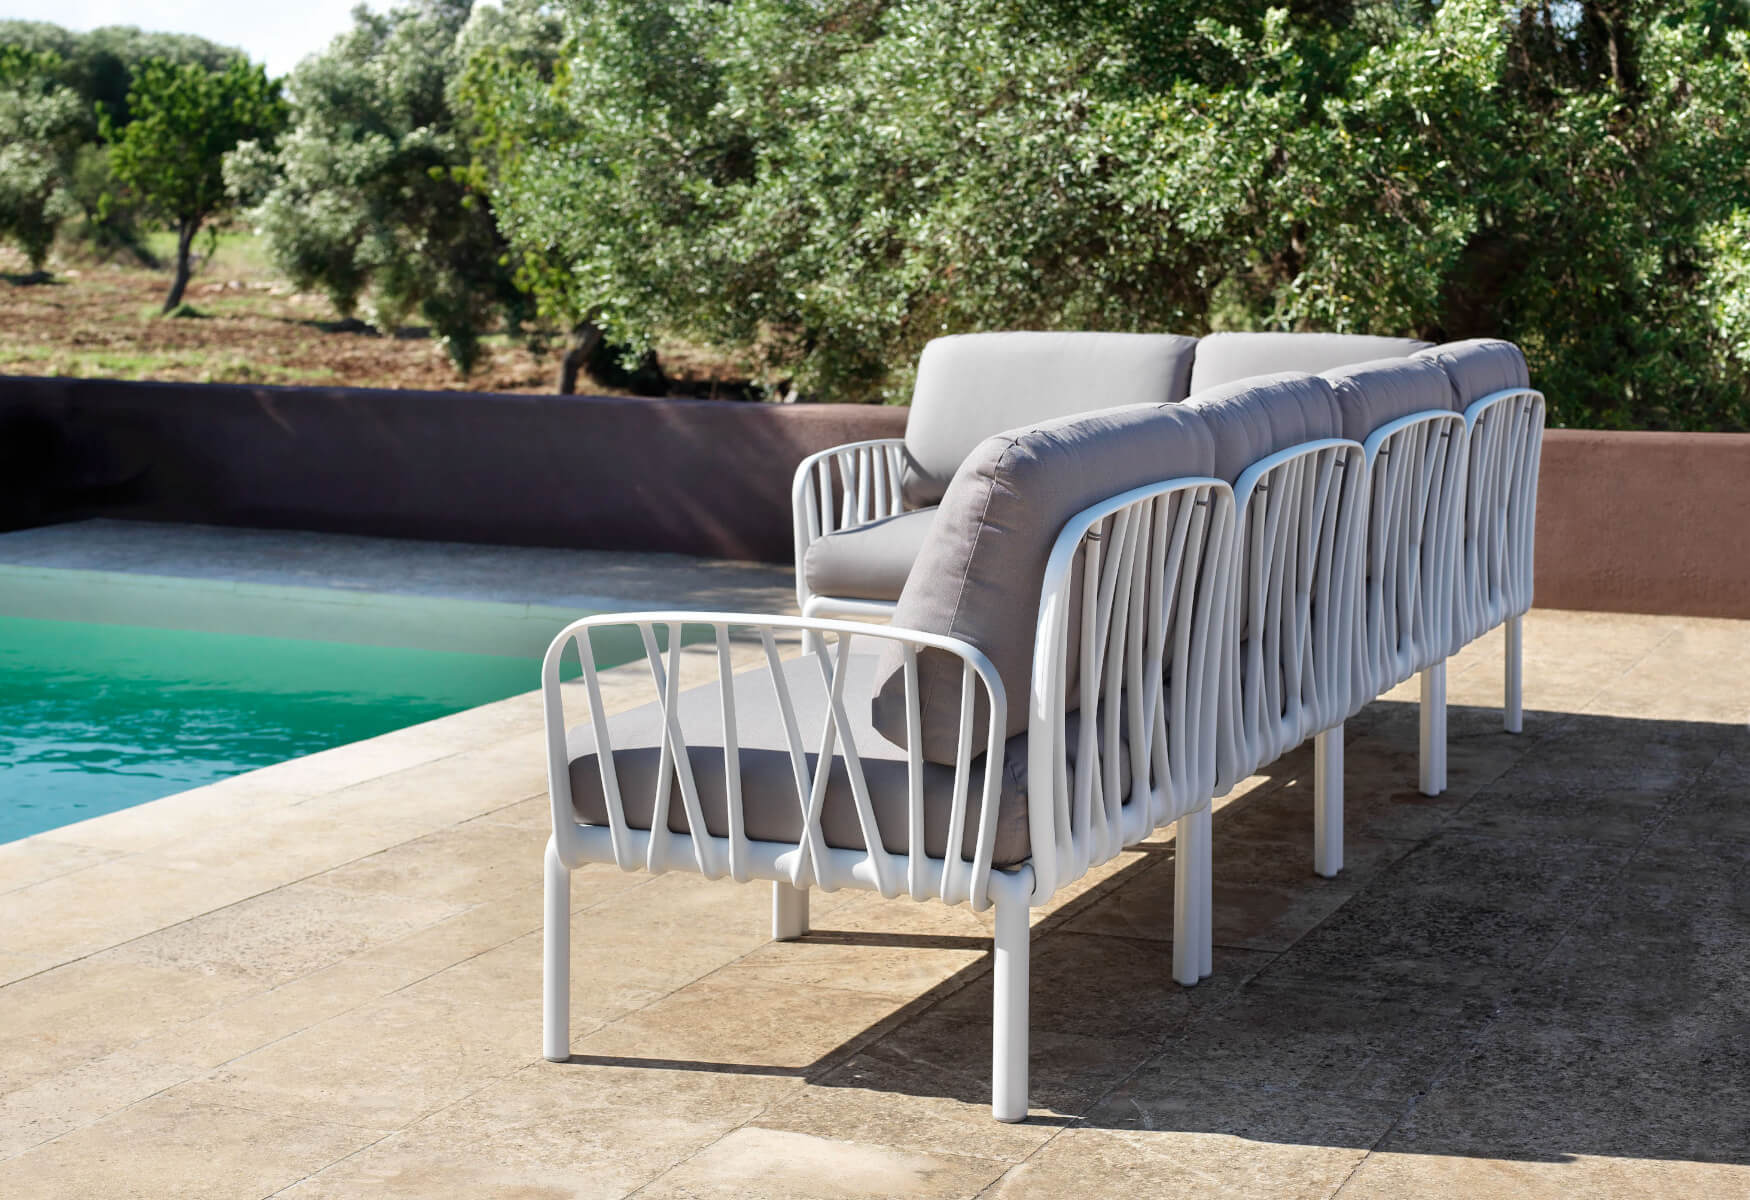 Komodo Gartensofa 3-Sitzer, anthrazit / adriatic sunbrella